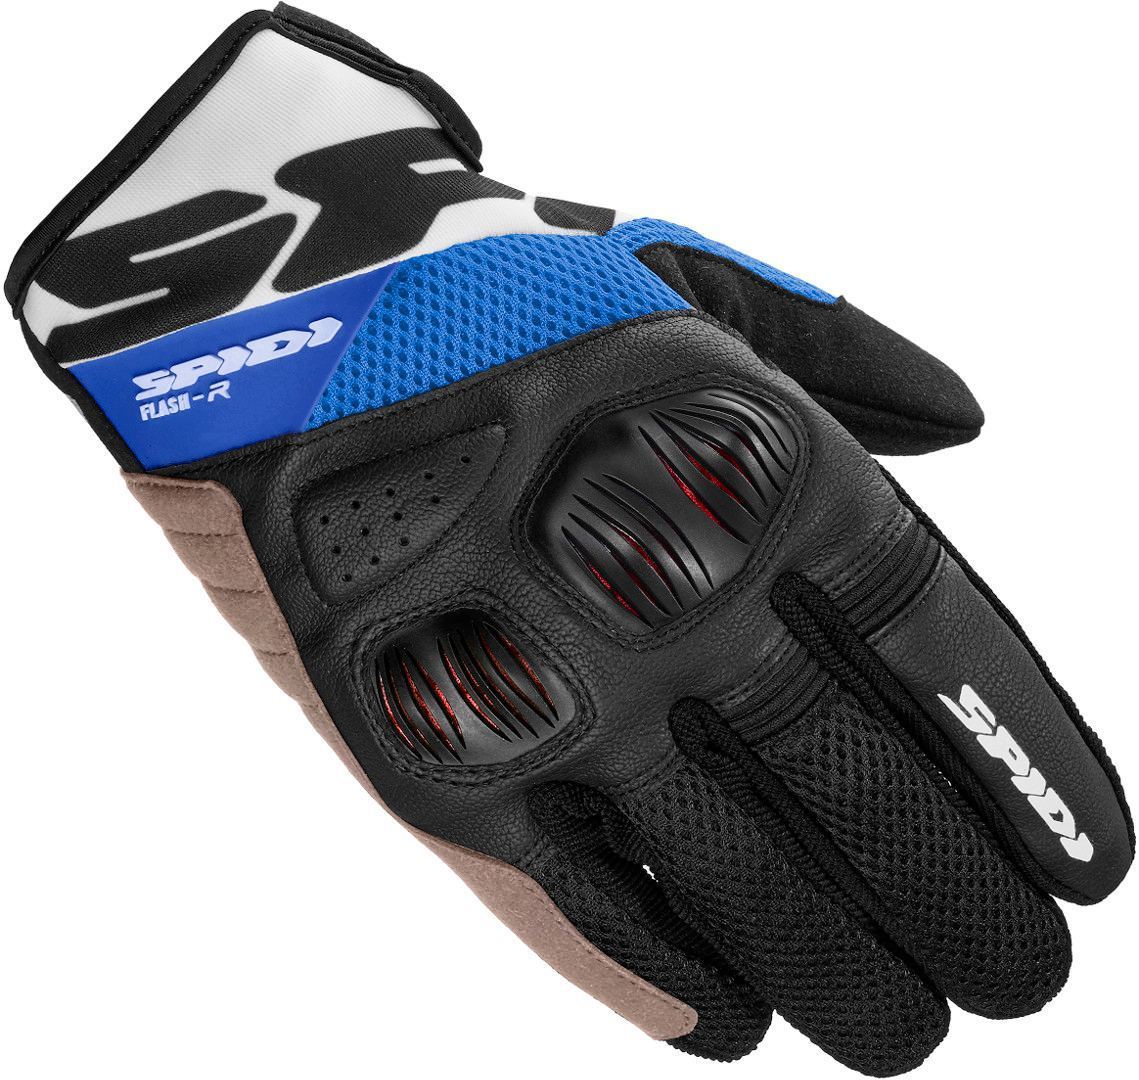 Spidi Flash-R Evo Handschuhe, schwarz-weiss-blau, Größe L, schwarz-weiss-blau, Größe L